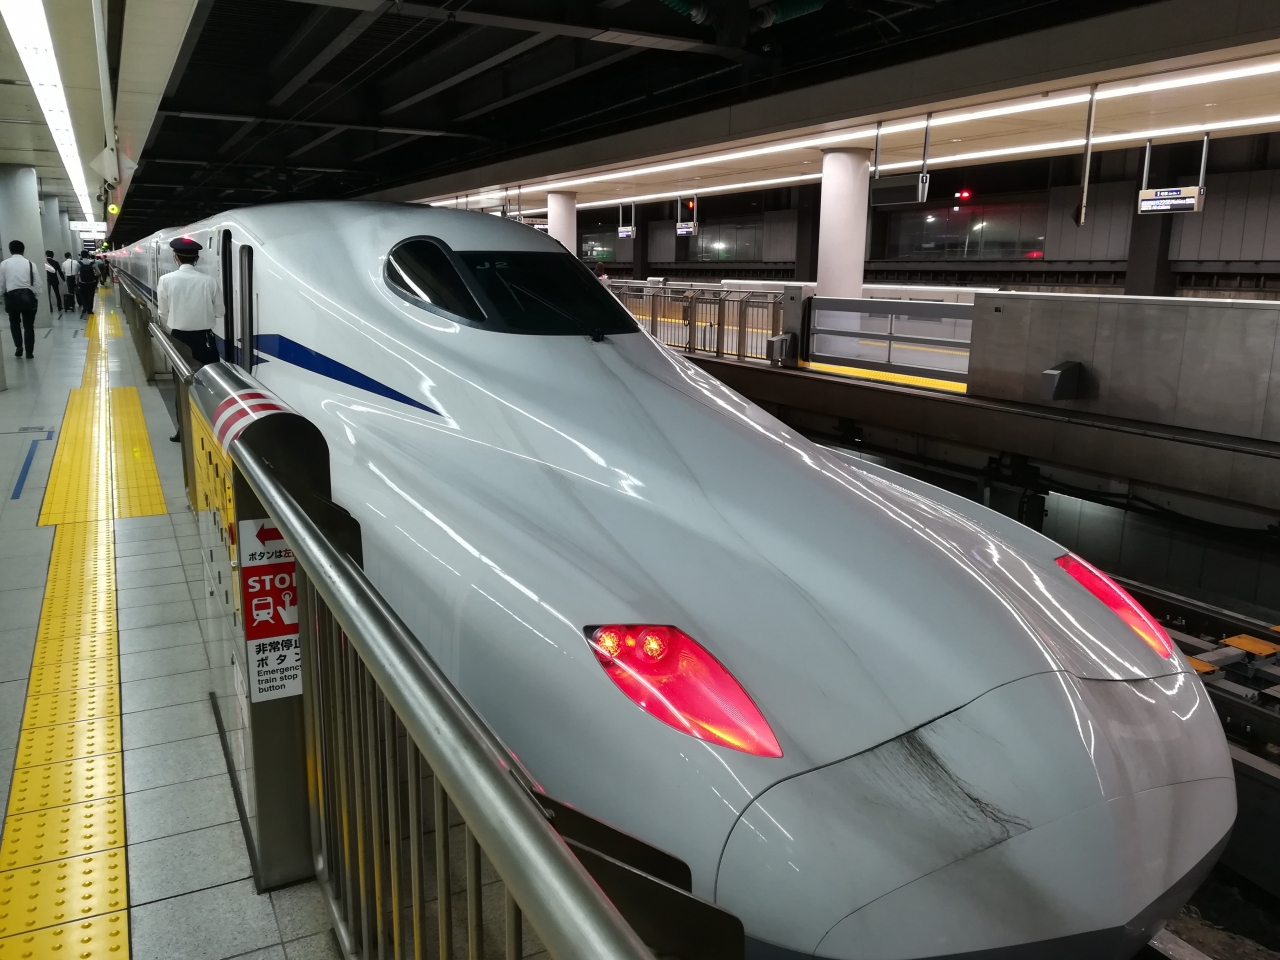 祝 07 01運行開始 名古屋から東京まで新型新幹線n700sに乗る旅 名古屋 愛知県 の旅行記 ブログ By けんさん フォートラベル